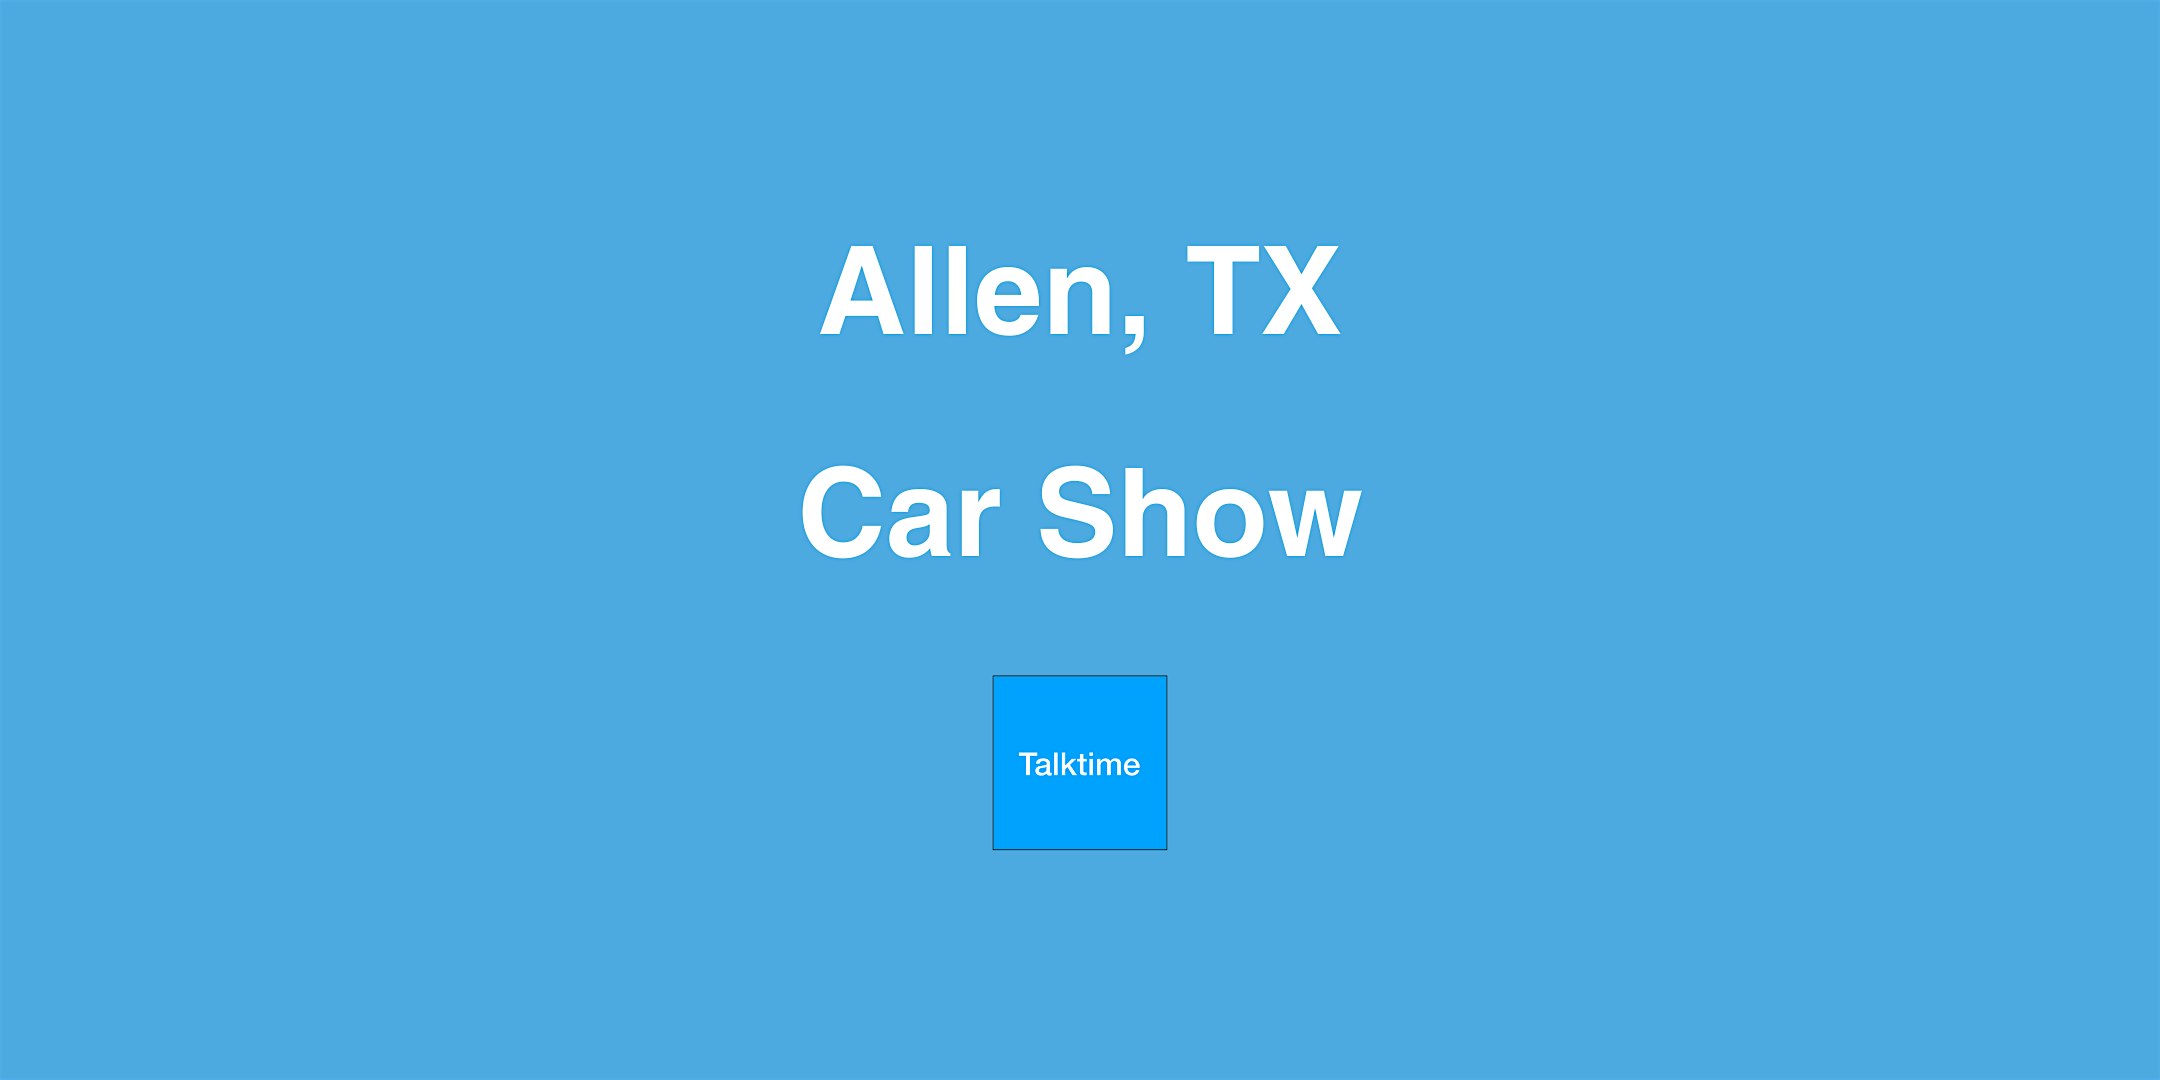 Car Show - Allen